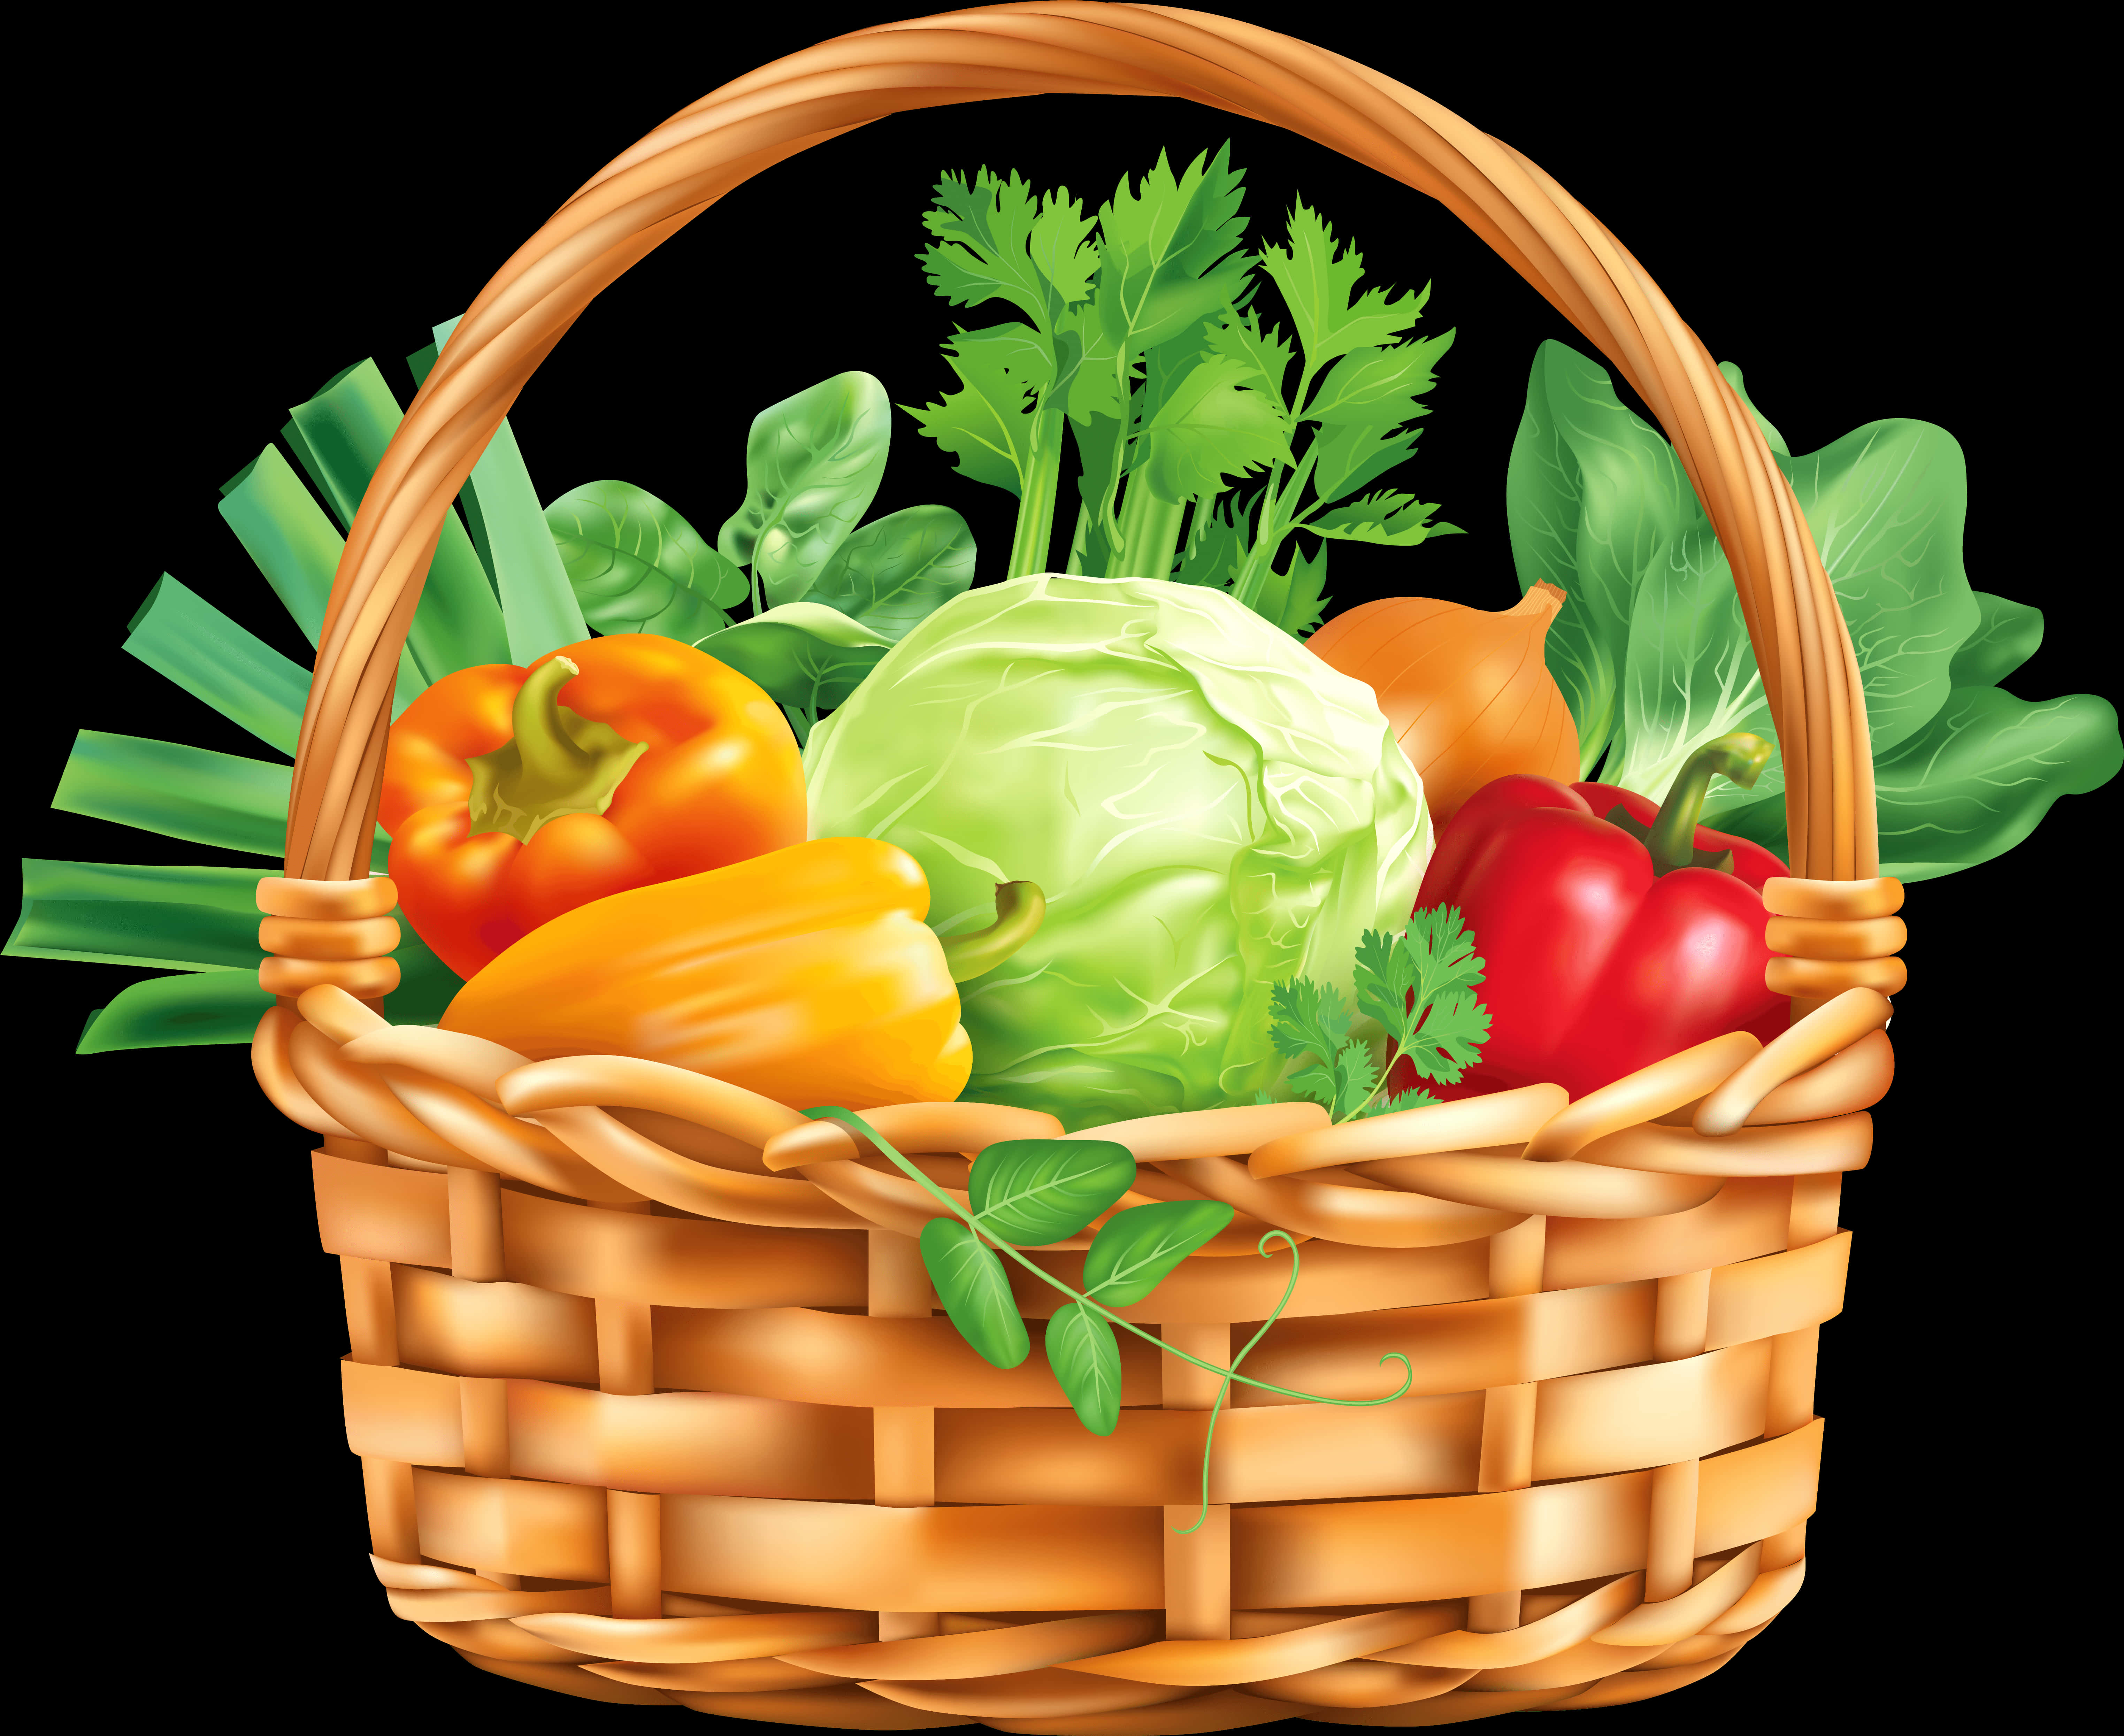 Colorful Vegetable Basket Illustration PNG image